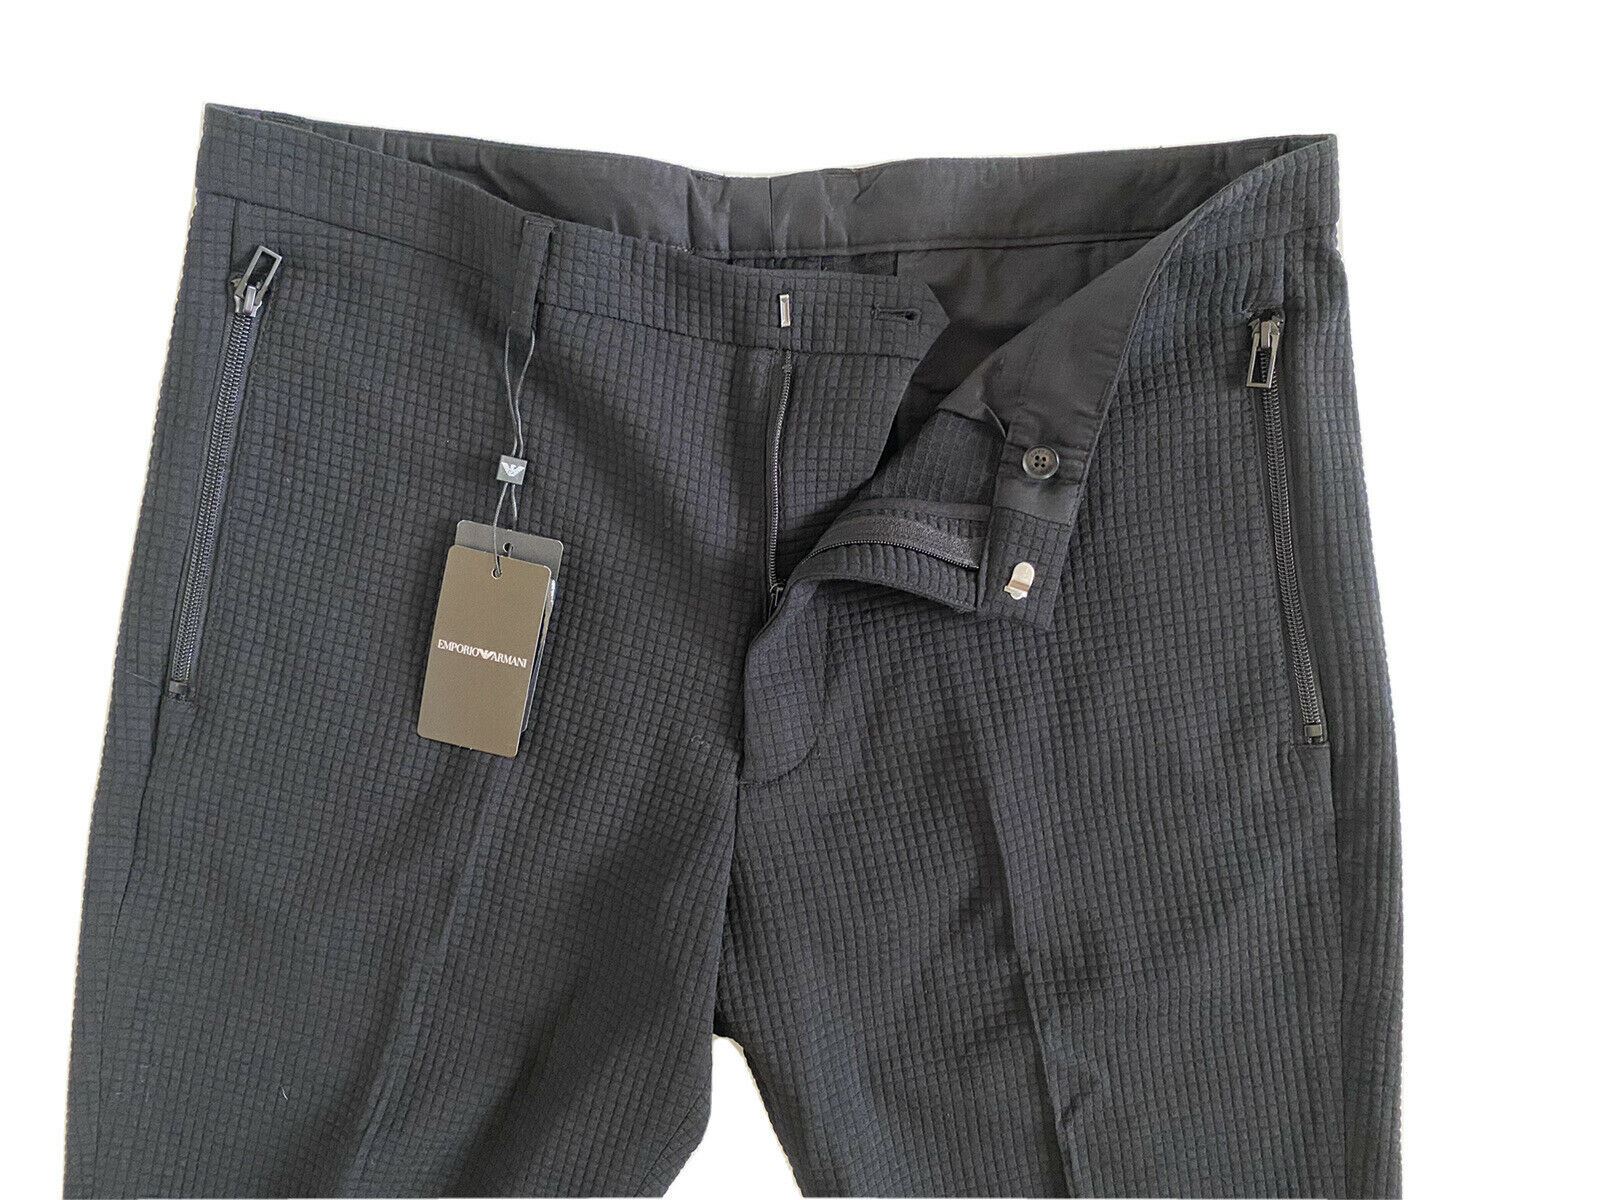 NWT $445 Emporio Armani Мужские черные повседневные брюки размер 36 США (52 евро) 3G1PP6